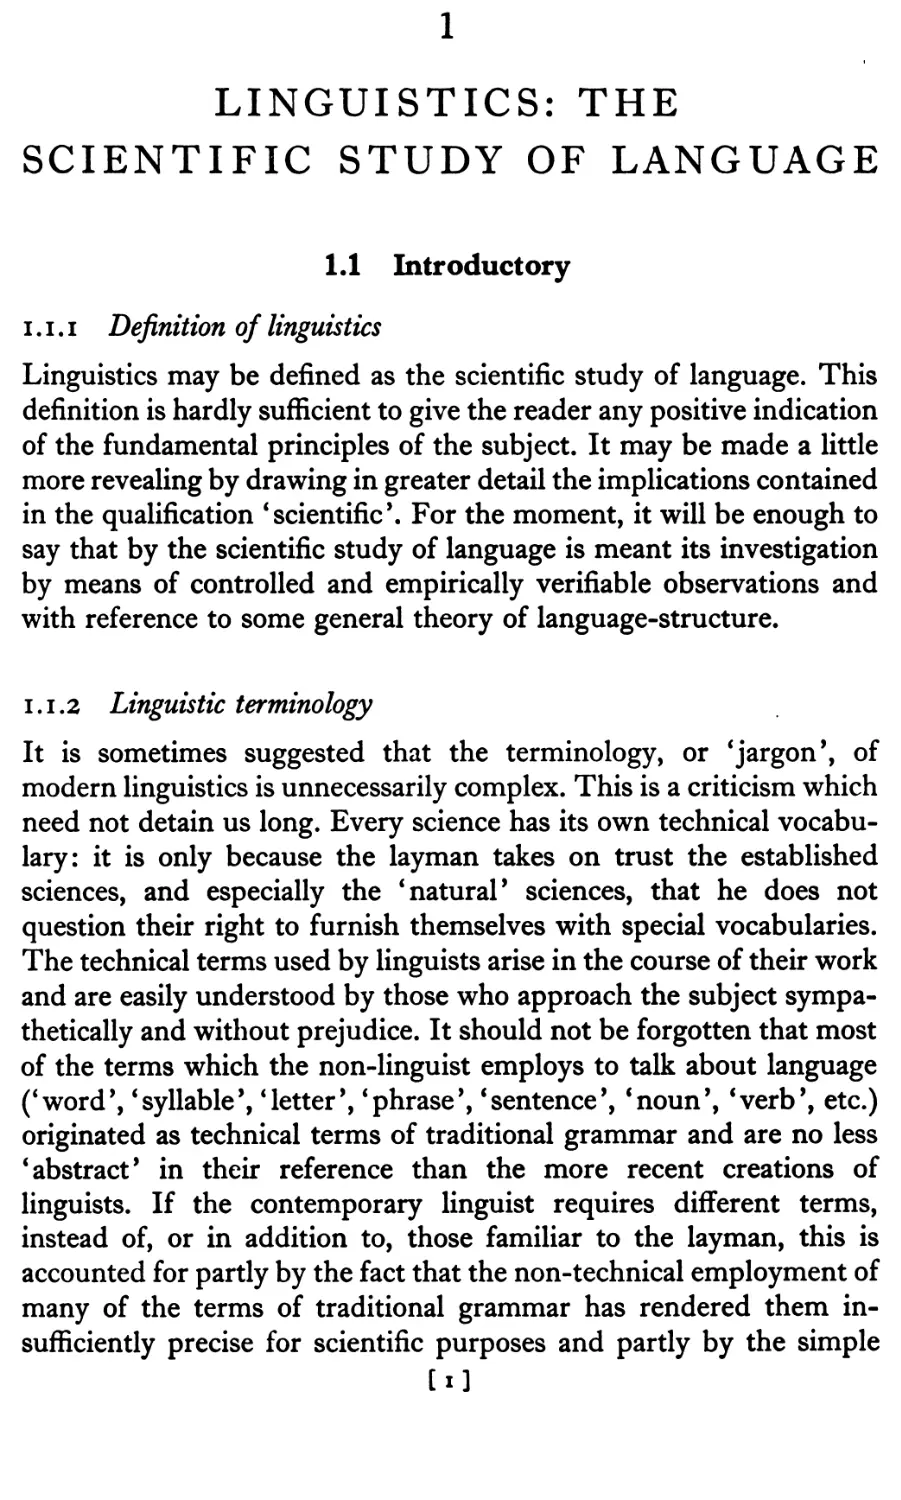 1 Linguistics: The Scientific Study of Language